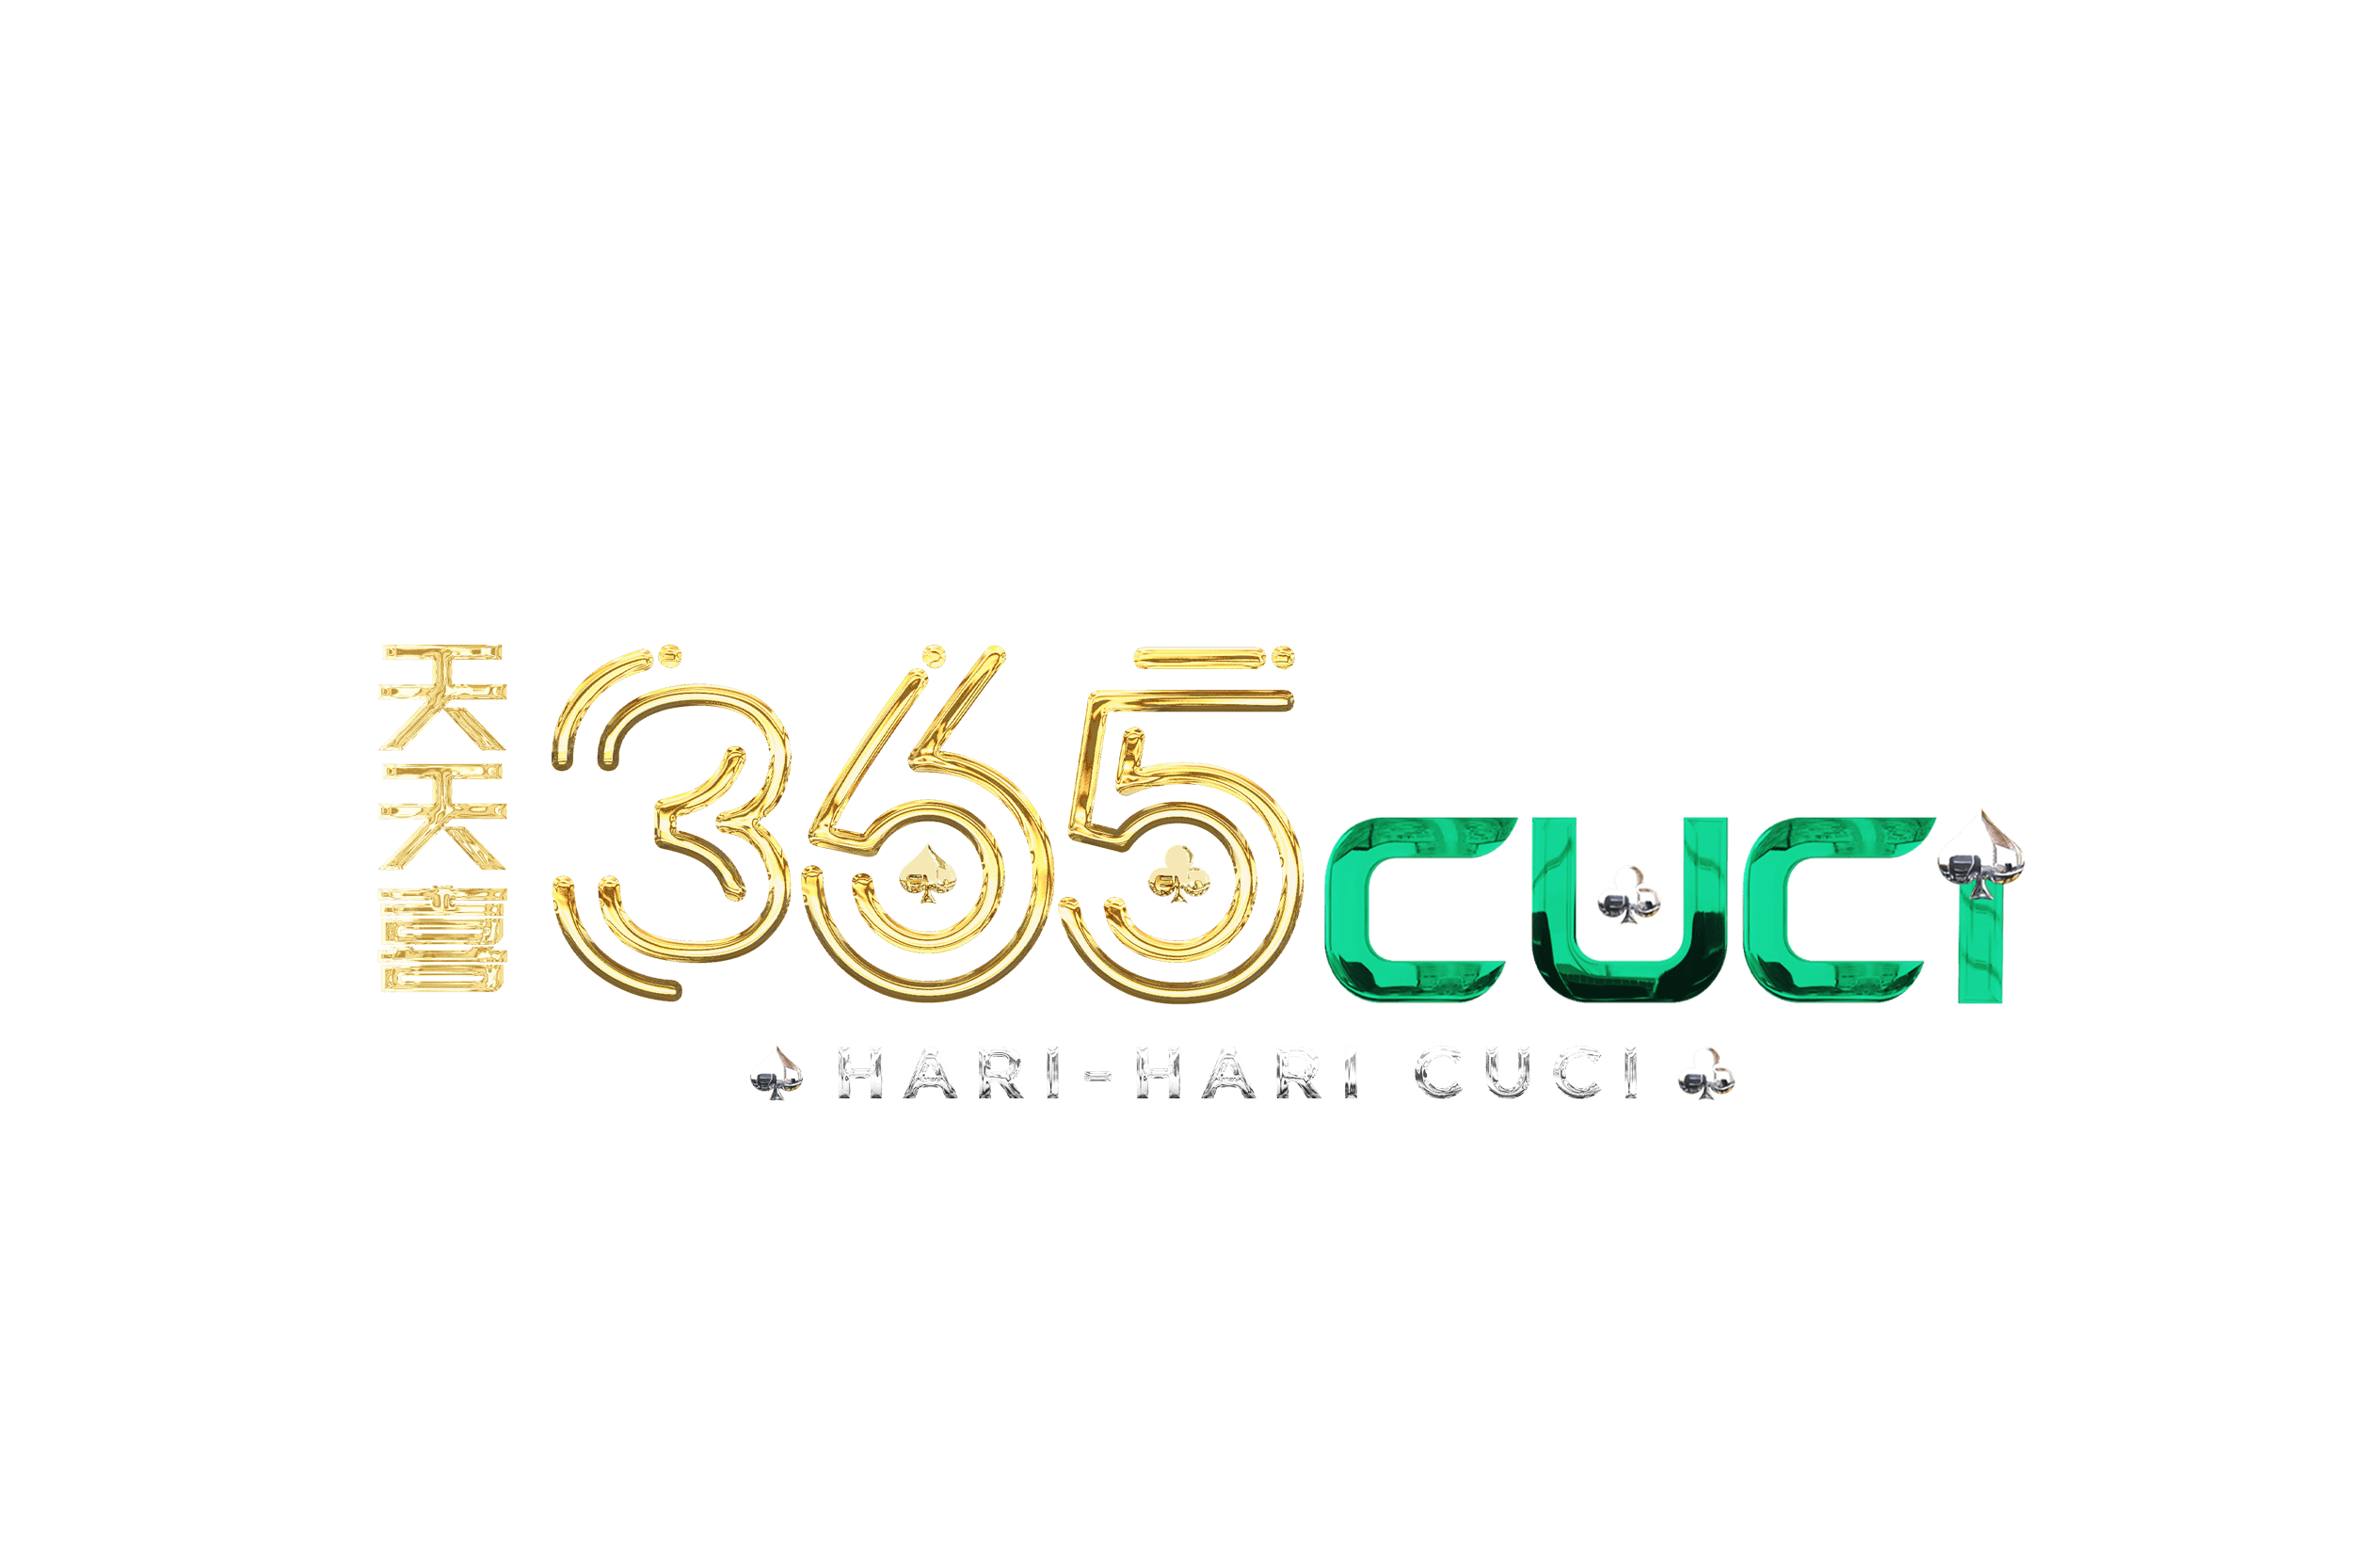 365cuci.club-logo